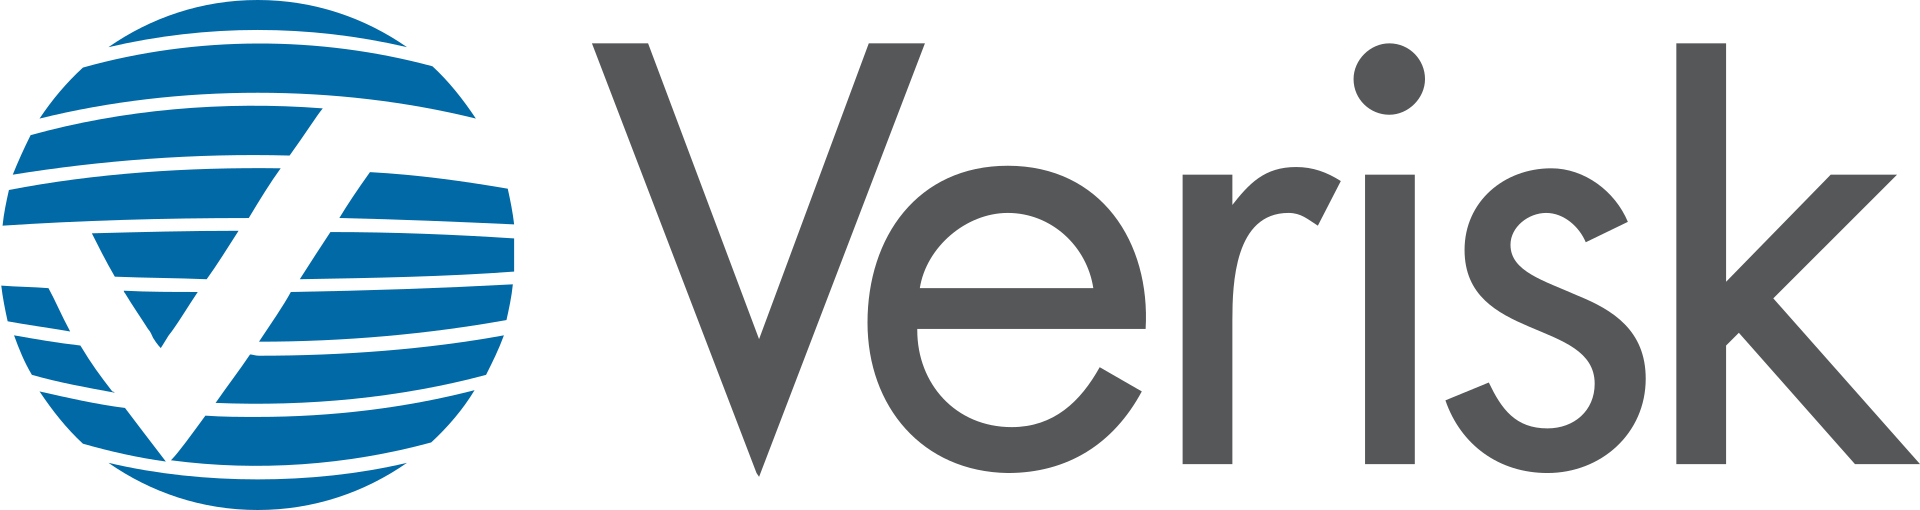 Verisk Analytics Brand Logo